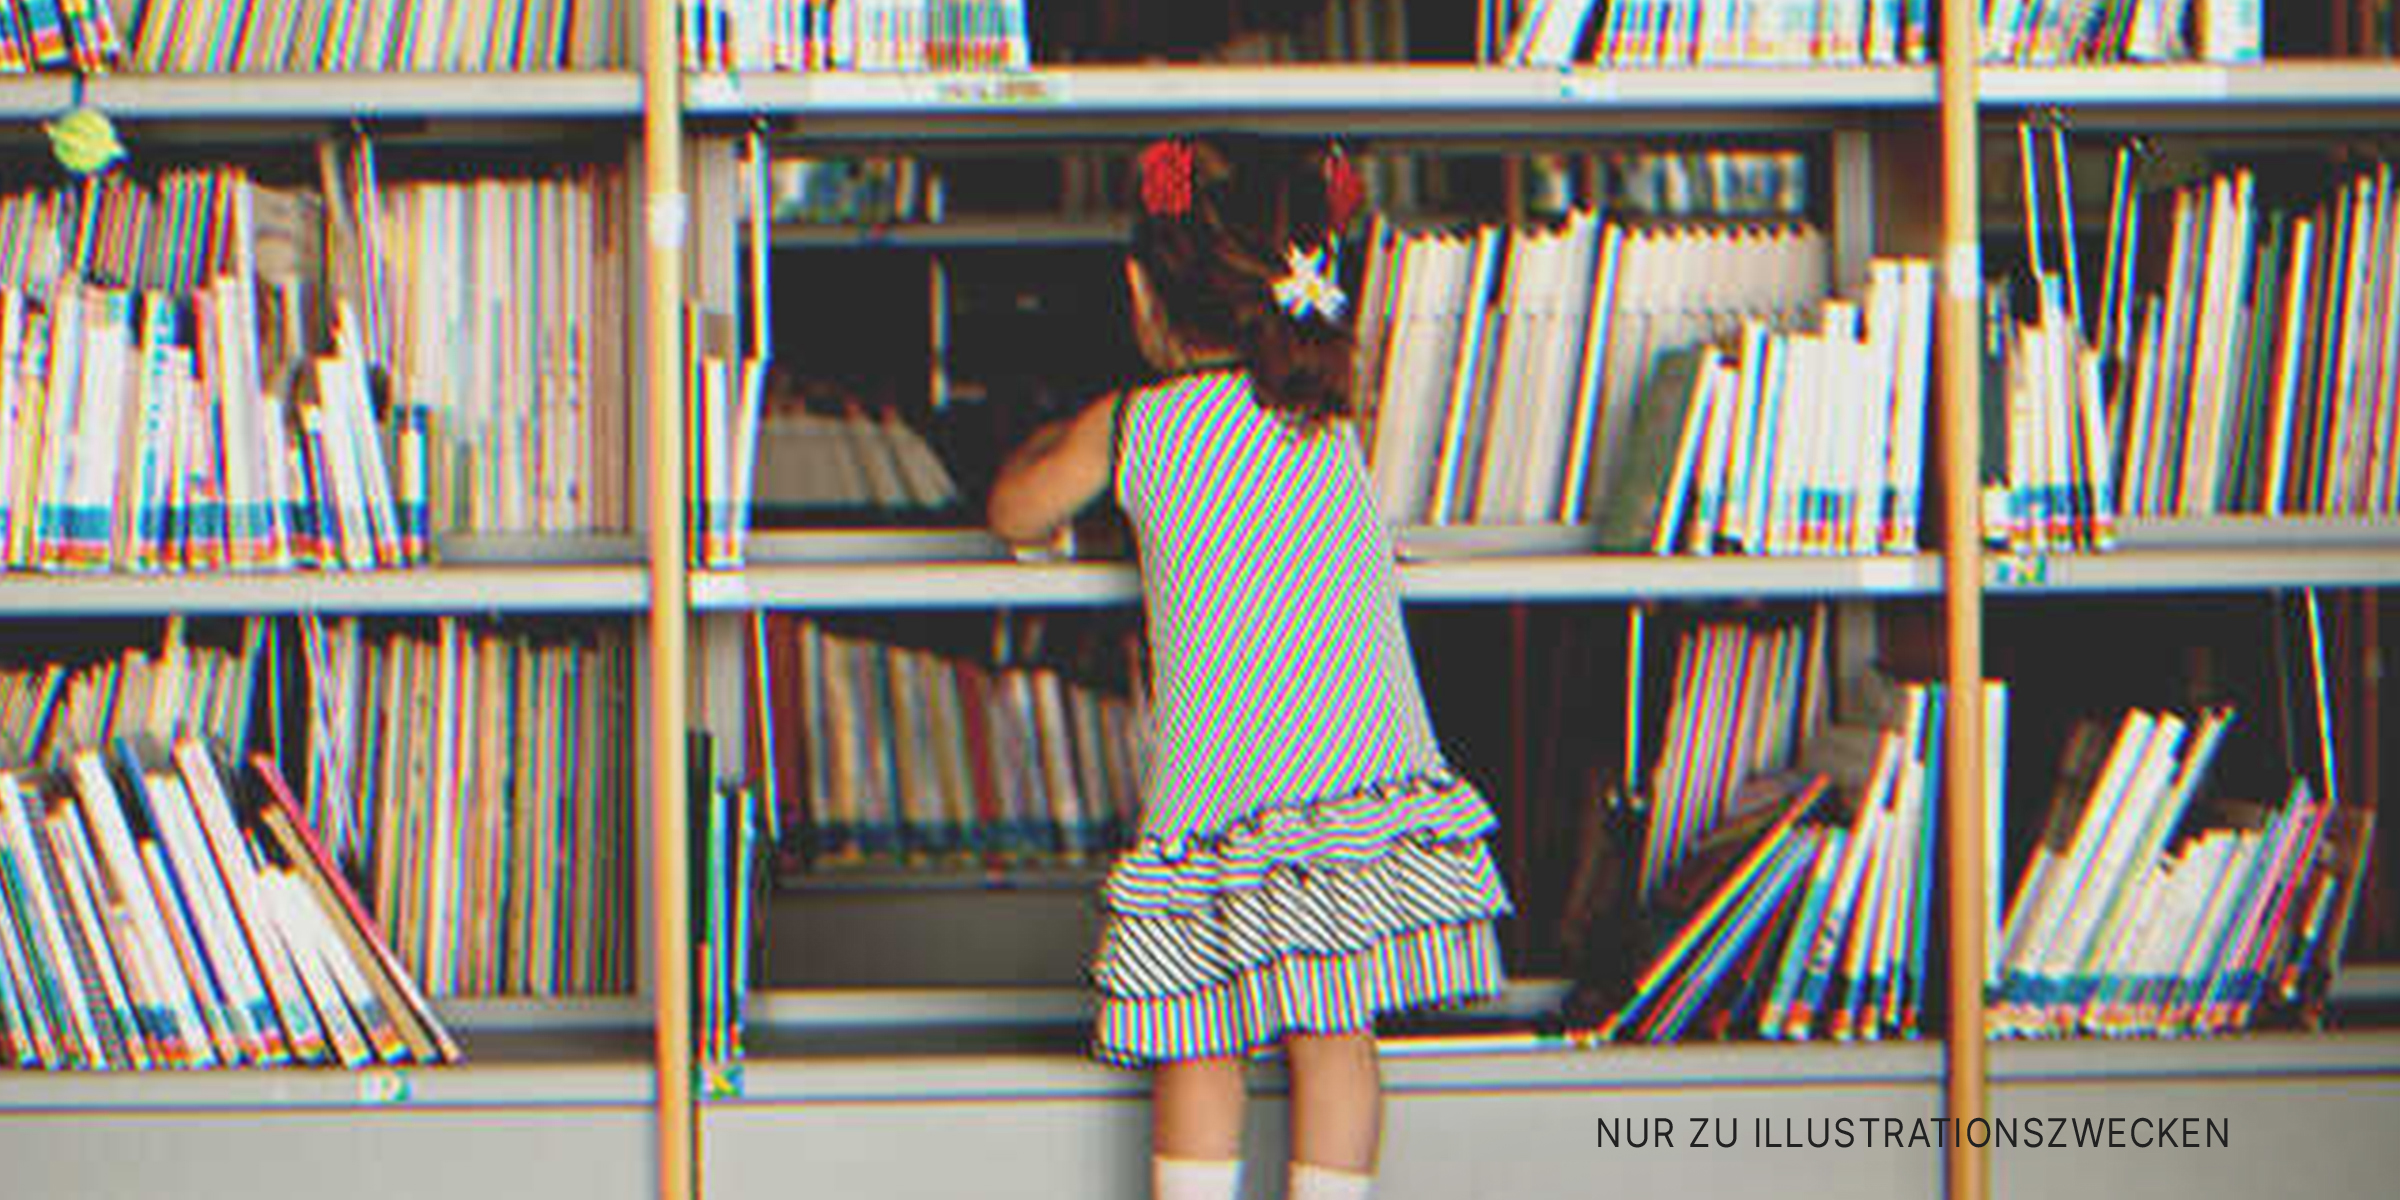 Ein Mädchen beim Bücherregal | Quelle: Shutterstock